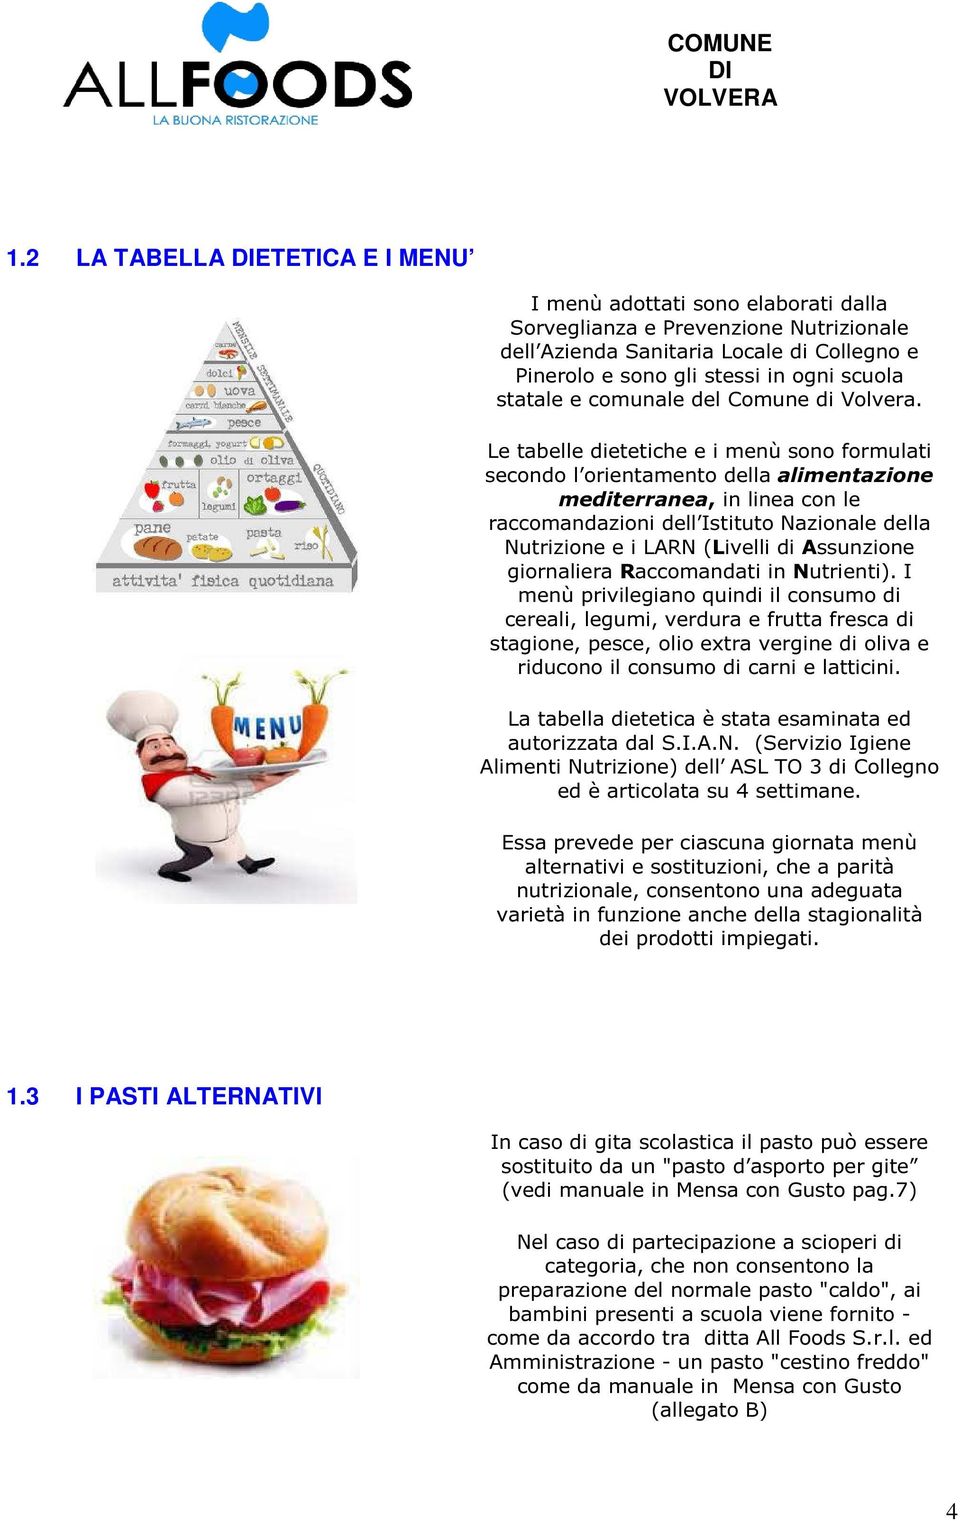 Le tabelle dietetiche e i menù sono formulati secondo l orientamento della alimentazione mediterranea, in linea con le raccomandazioni dell Istituto Nazionale della Nutrizione e i LARN (Livelli di